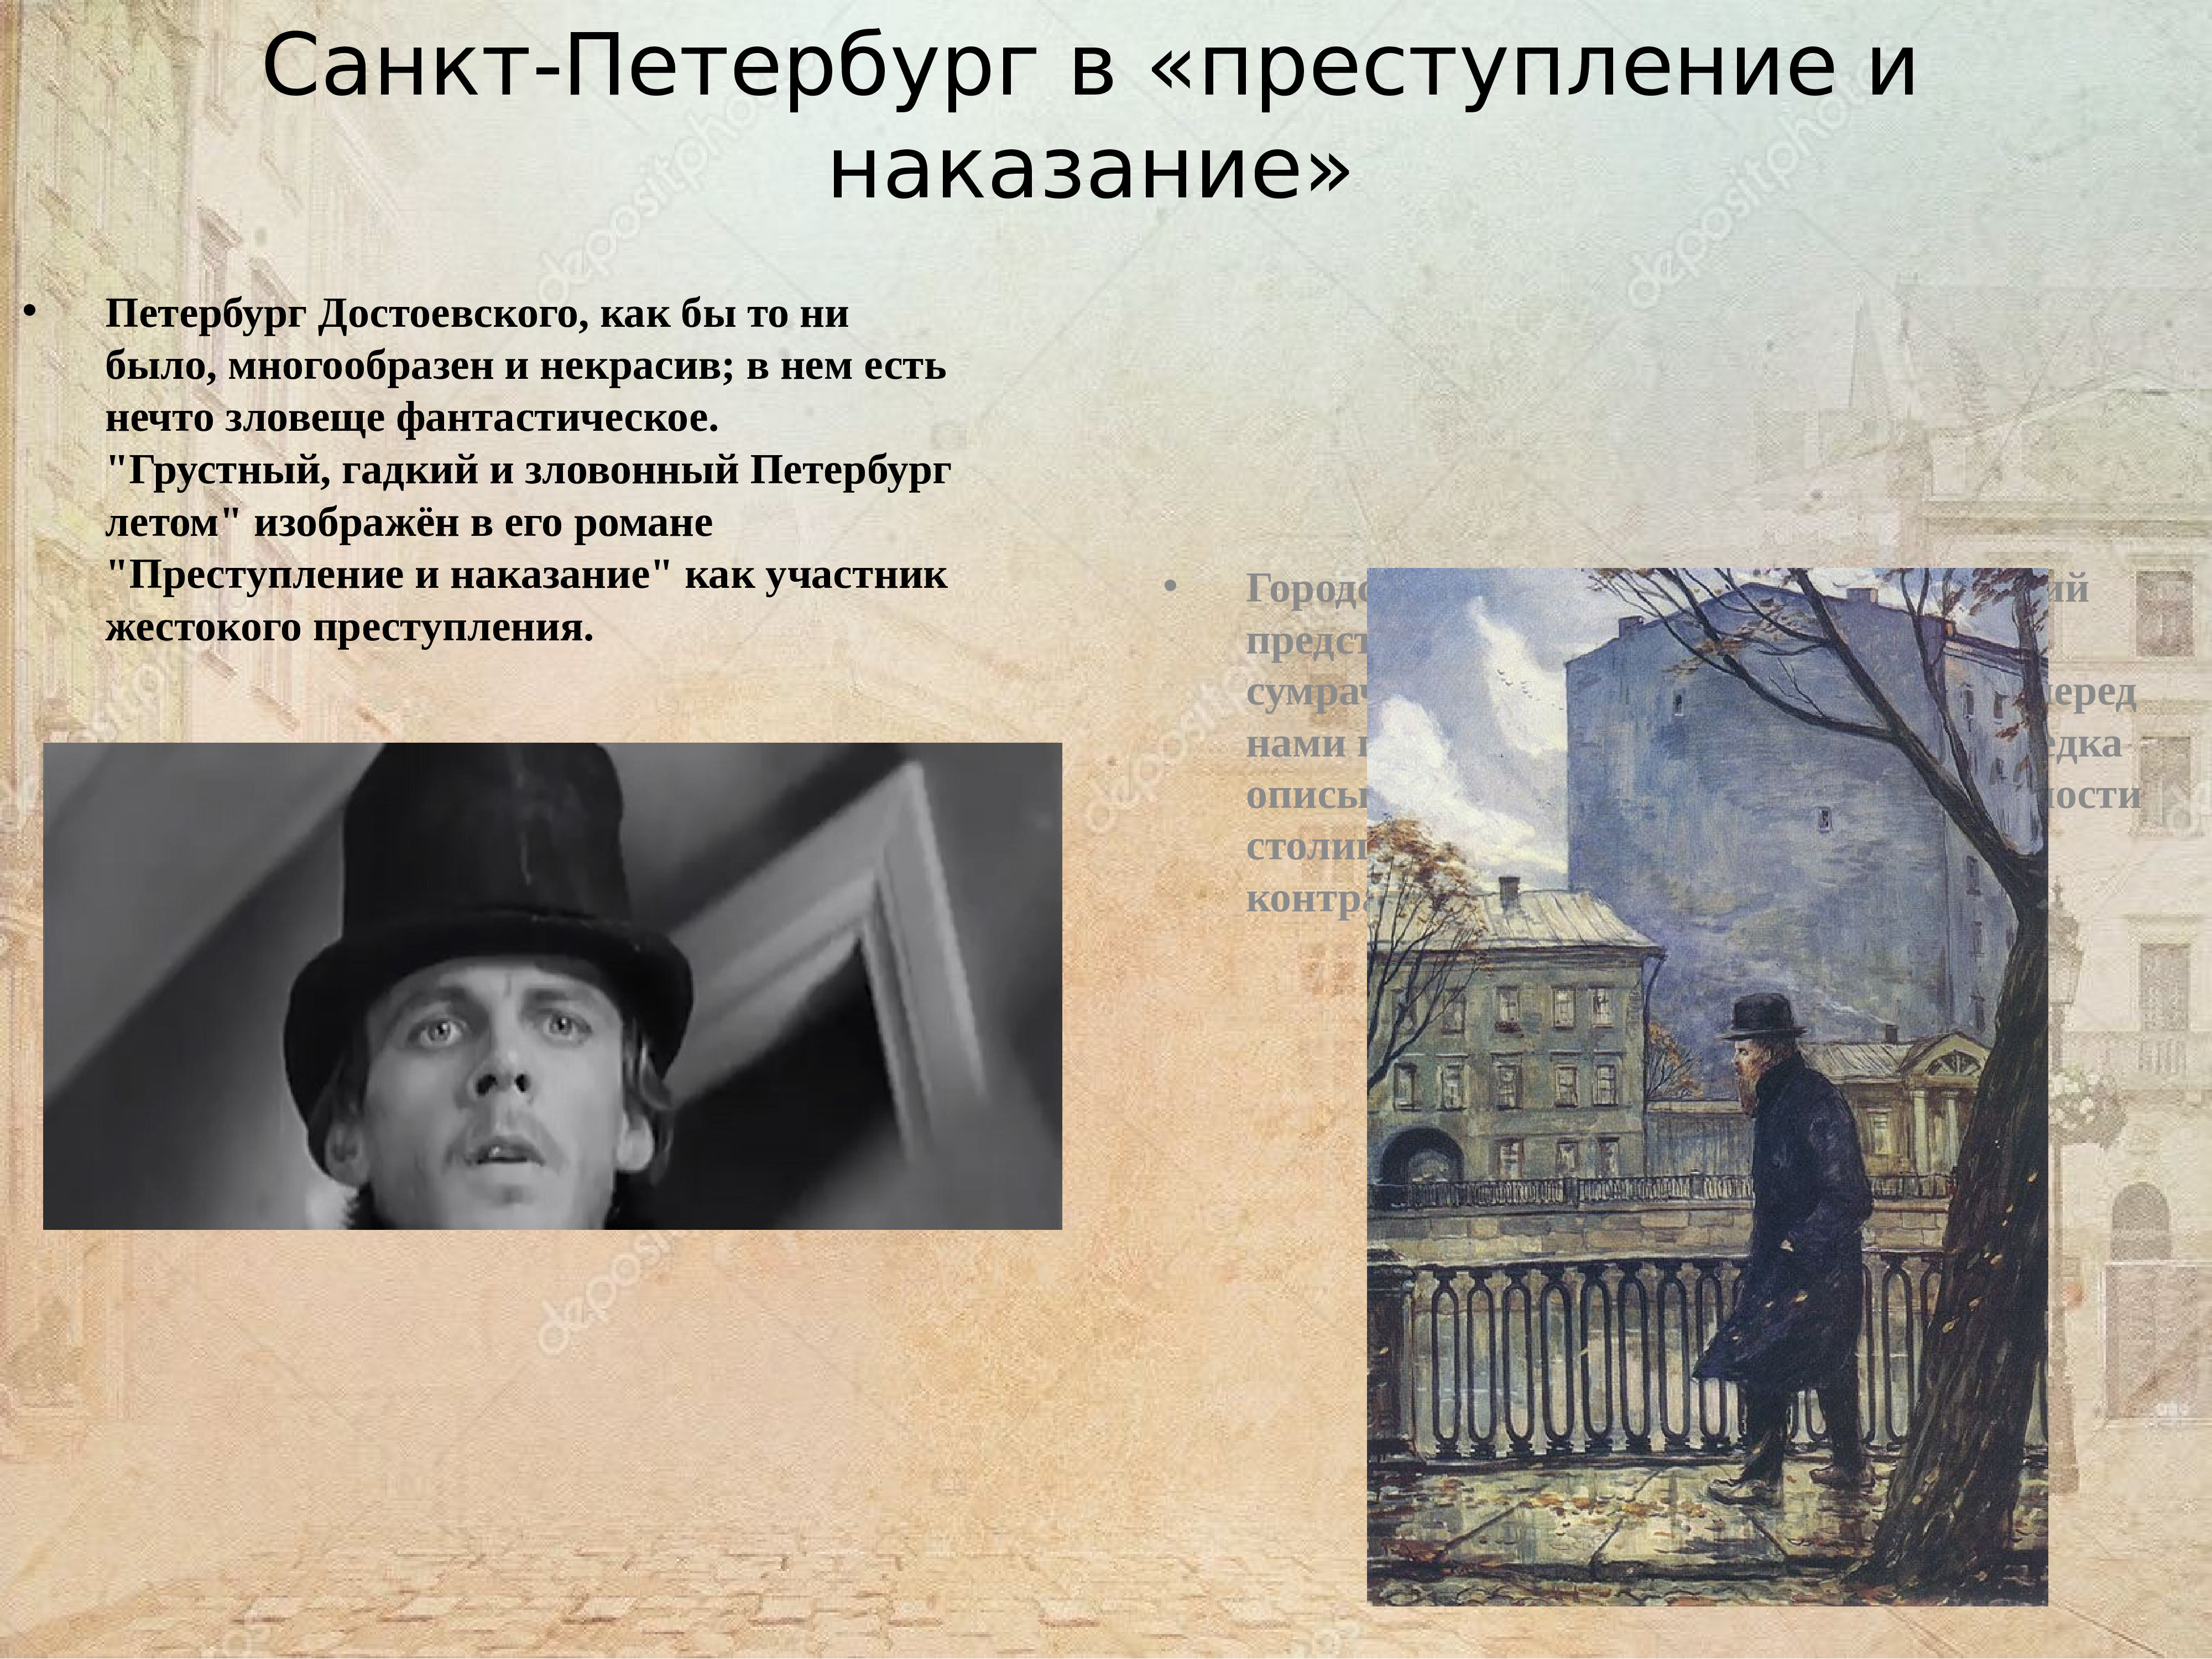 Петербург Достоевского преступление и наказание